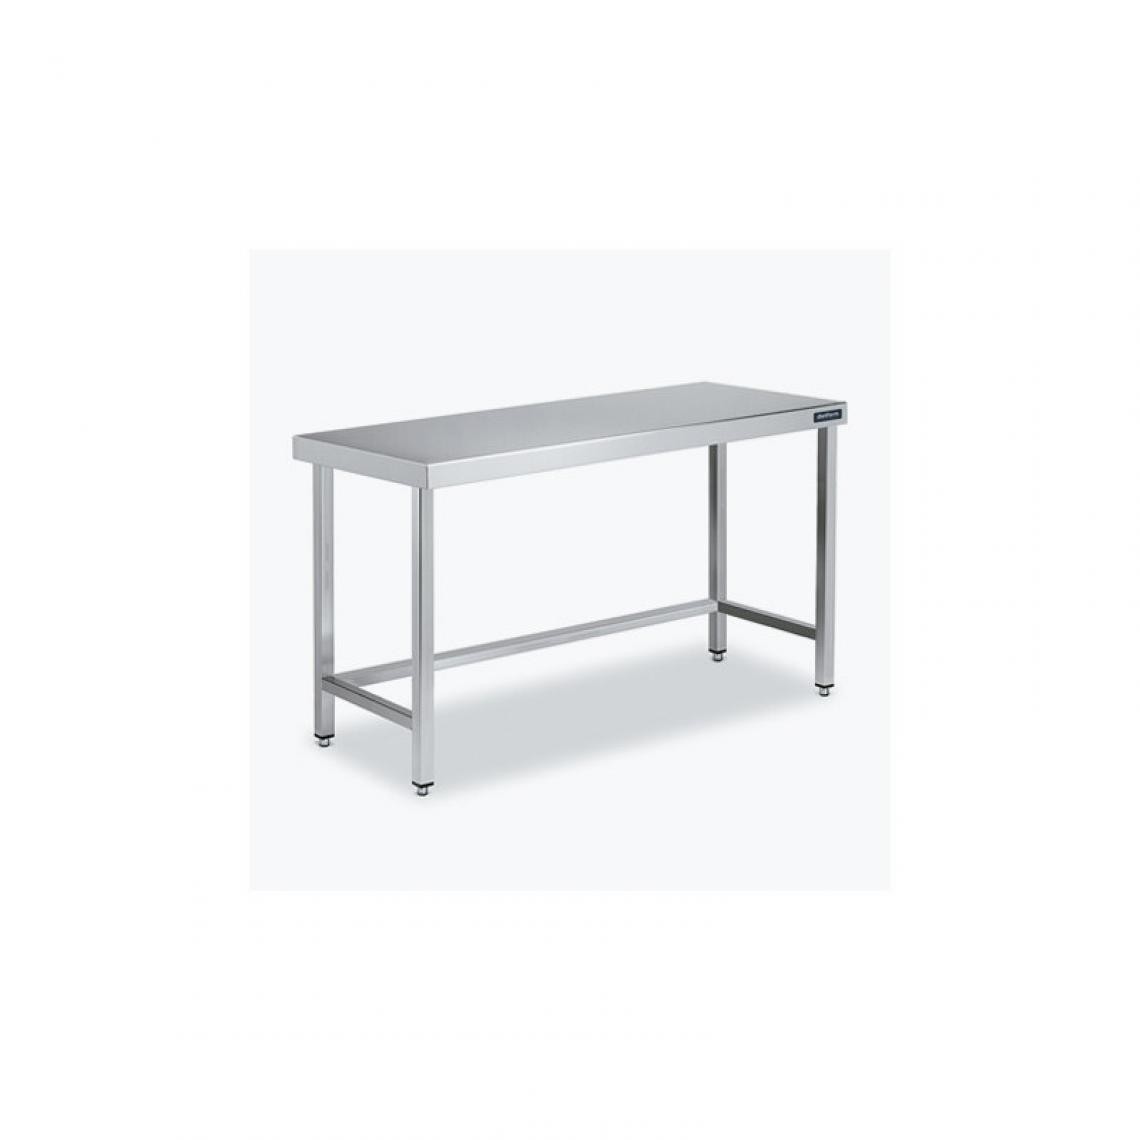 DISTFORM - Table Centrale 600x600X600 avec Renforts - Distform - Inox 18/101900x600x600mm - Tables à manger